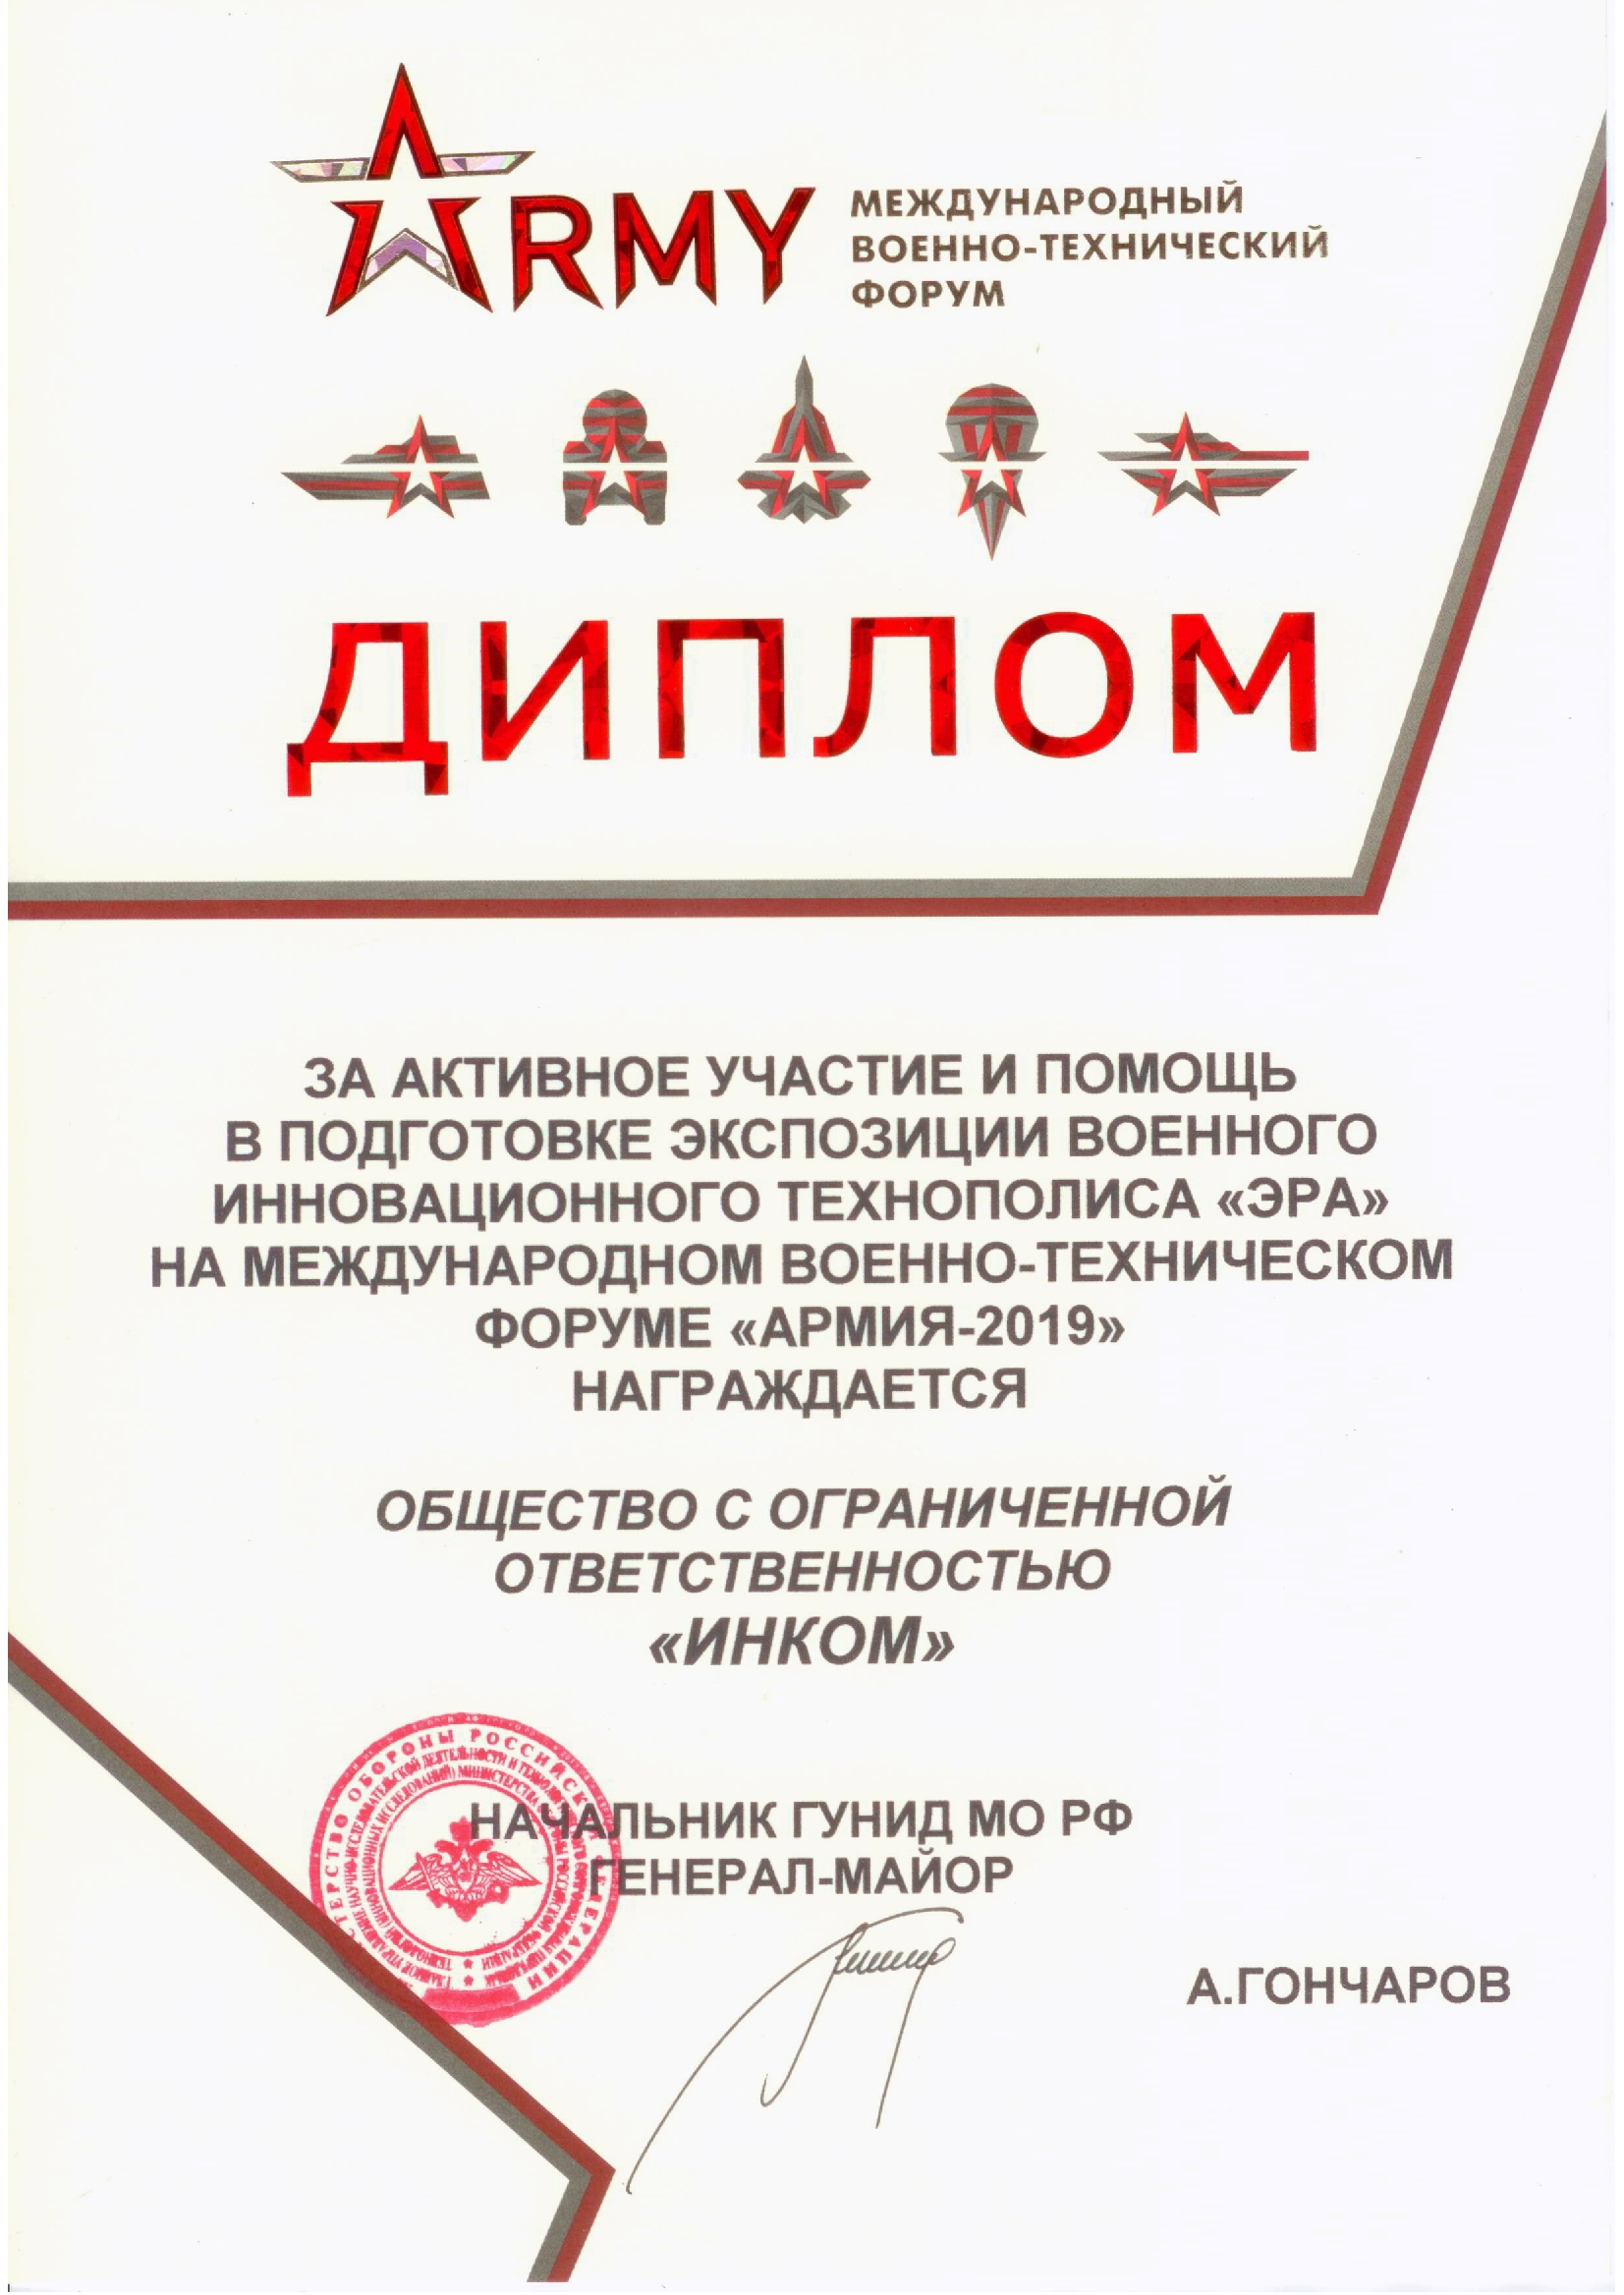 За участие в военно-техническом форуме "Армия" 